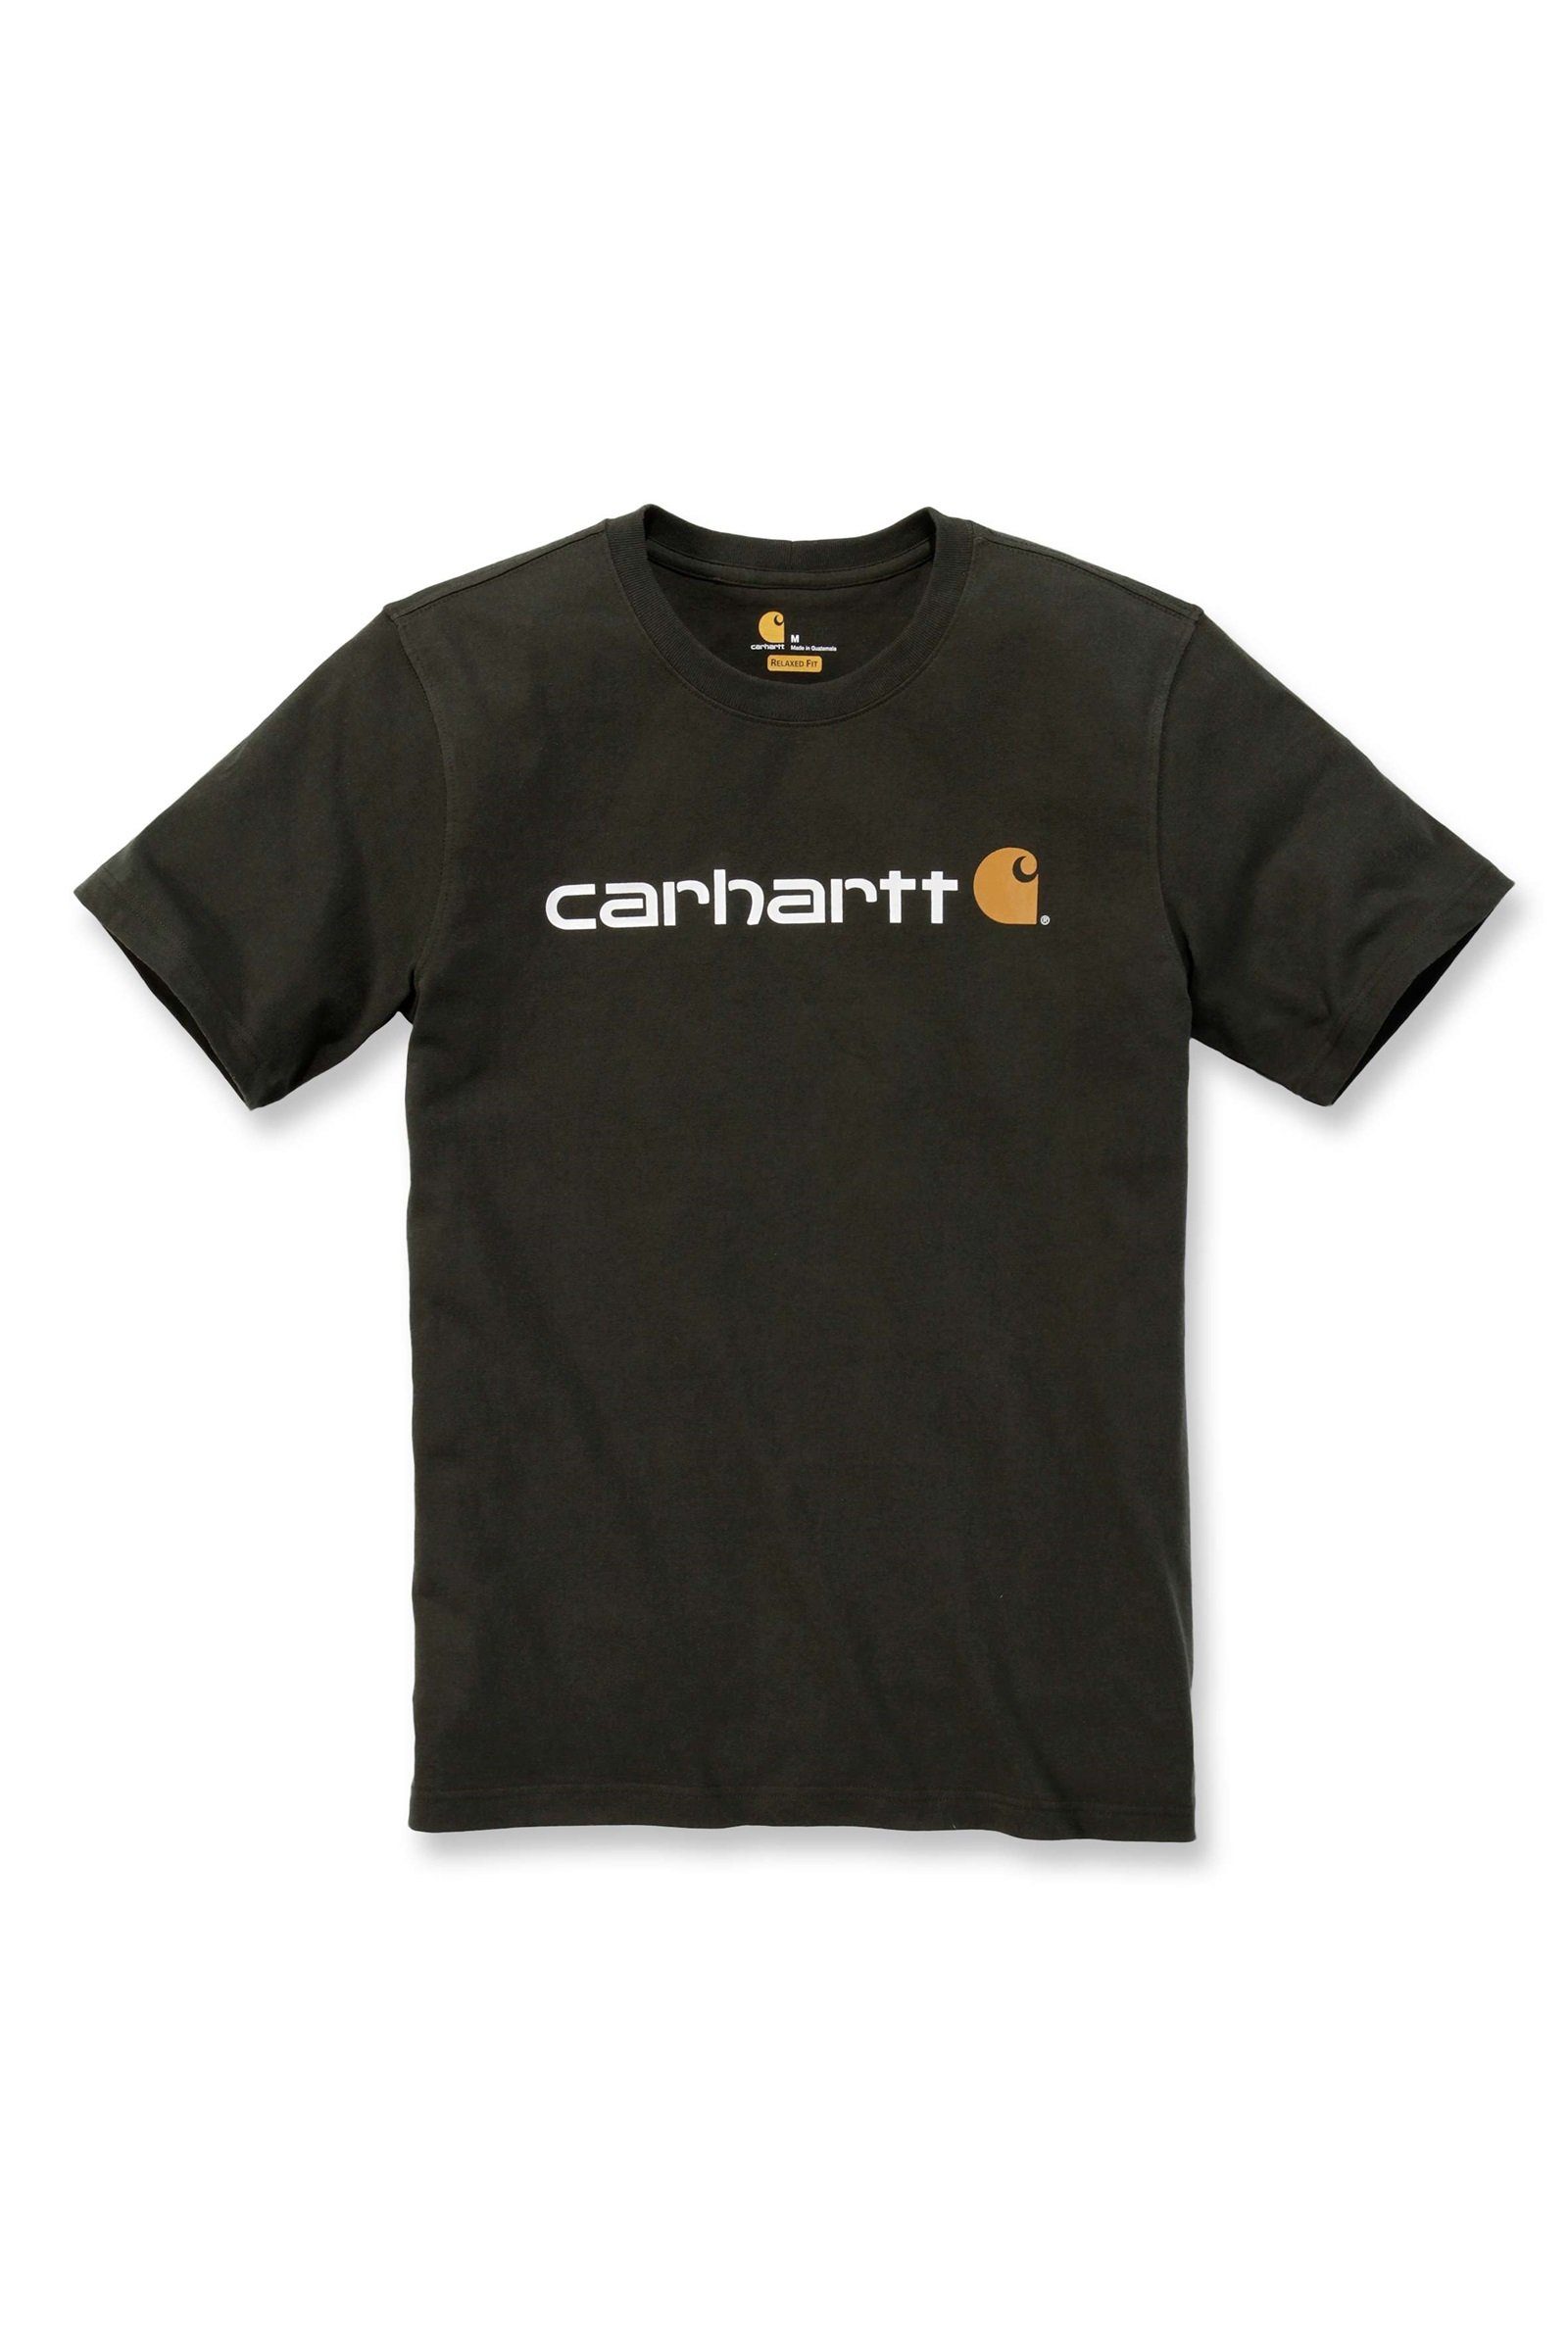 Carhartt Heavyweight T-Shirt Herren Fit Adult peat Graphic Logo Short-Sleeve Carhartt Relaxed T-Shirt